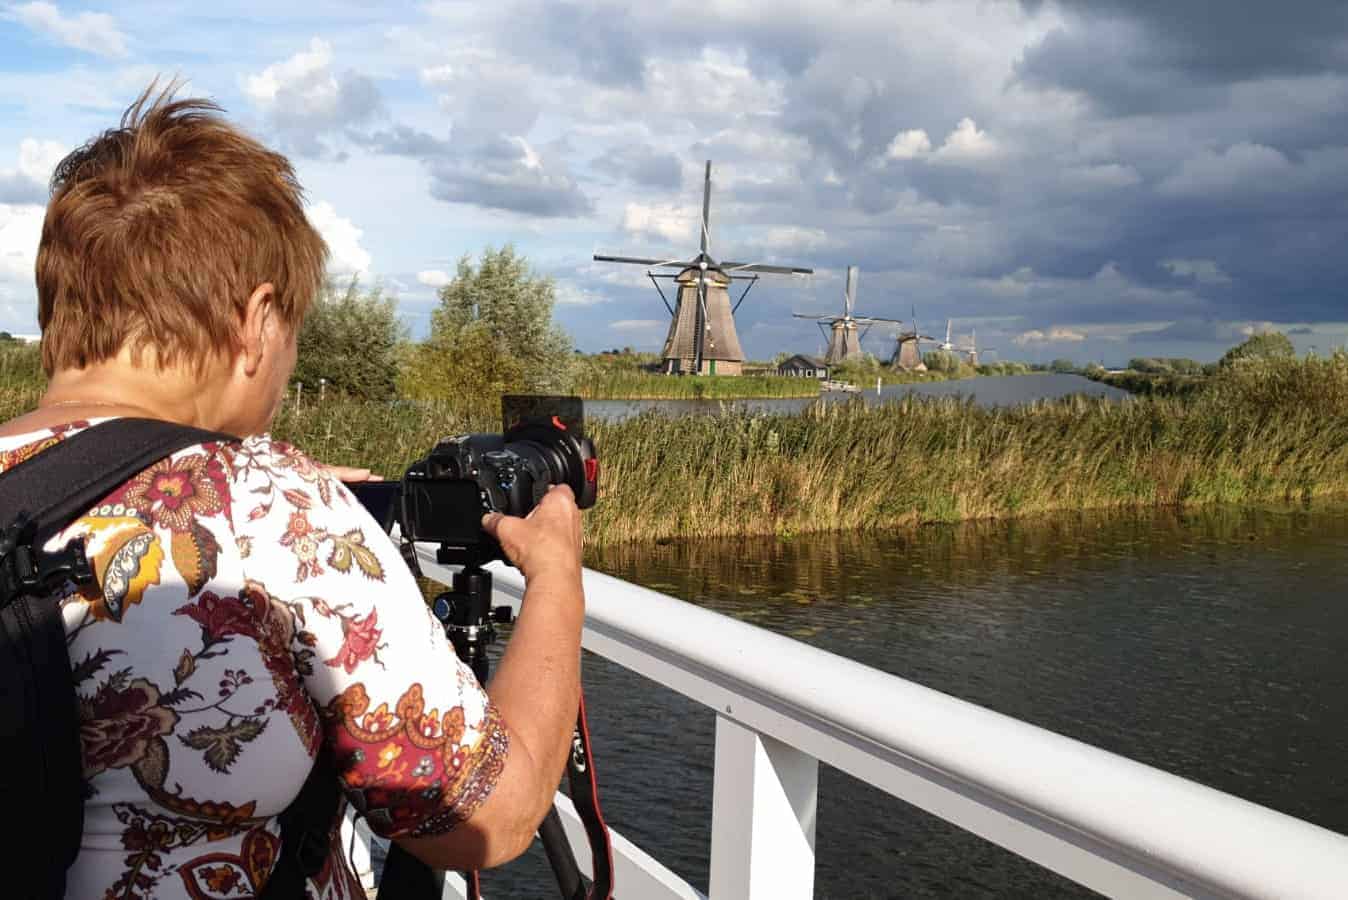 Deelneemster maakt HDR foto bij Zaanse Schans - Fotografie-reizen